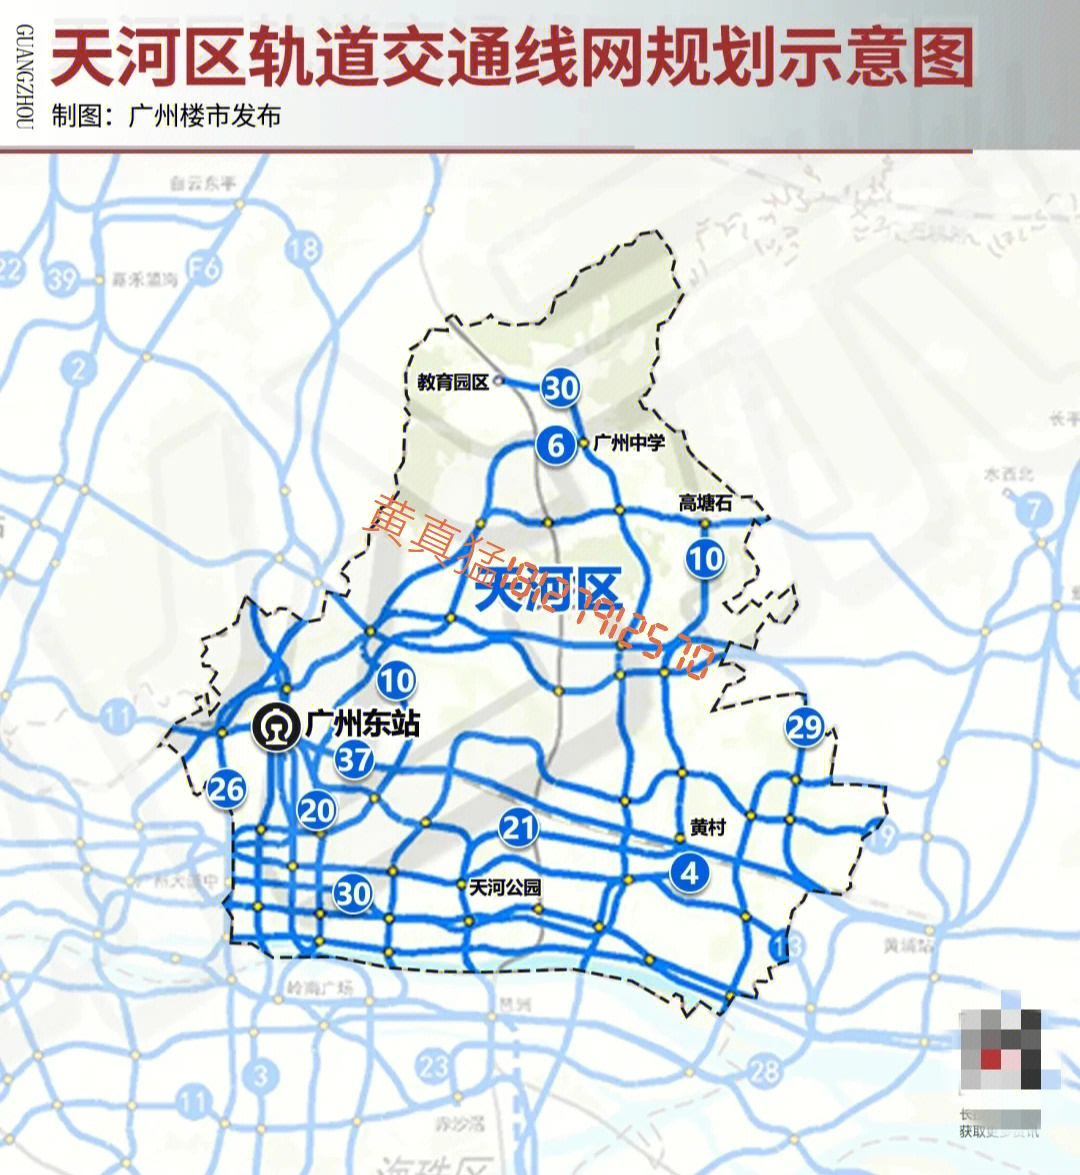 日前,《广州市轨道交通线网规划(2018